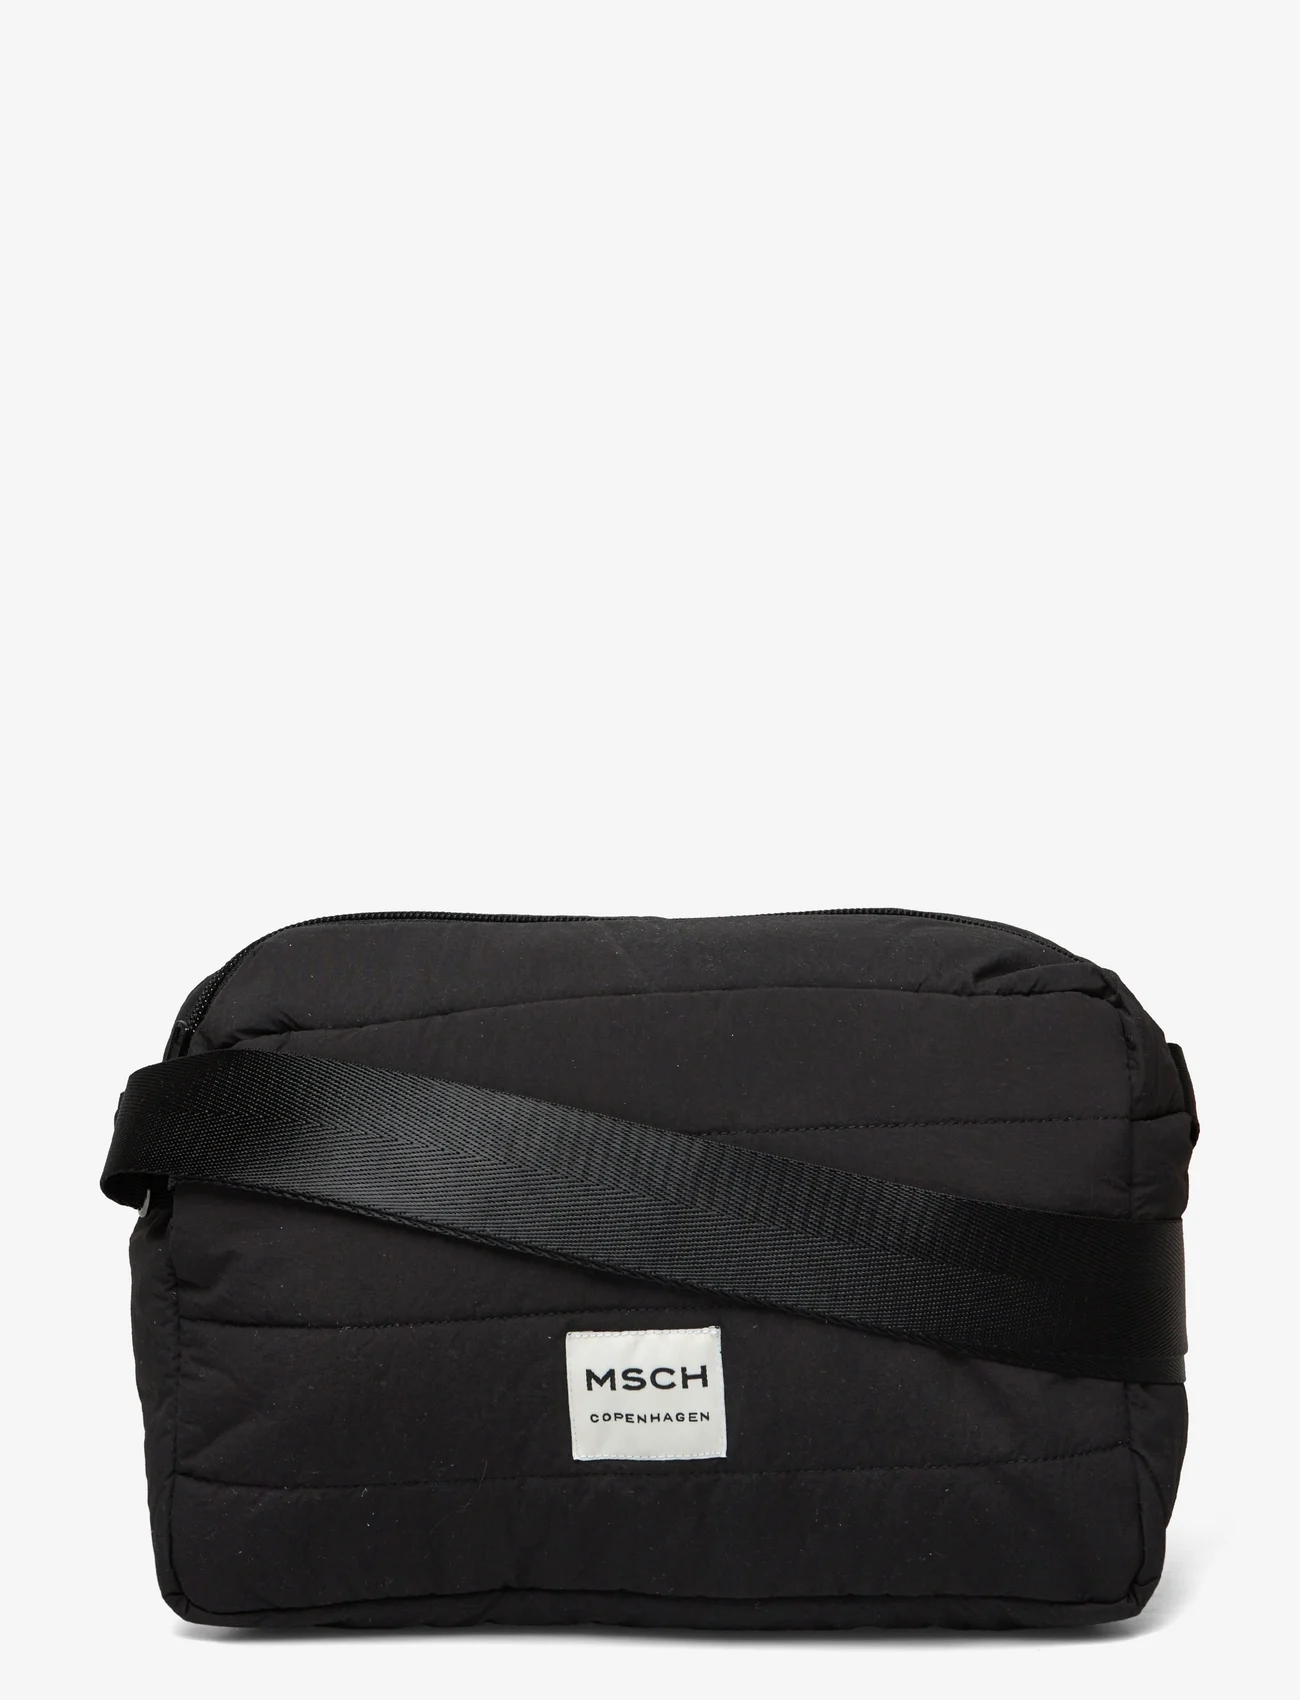 MSCH Copenhagen - MSCHSasja Crossover Bag - black - 0